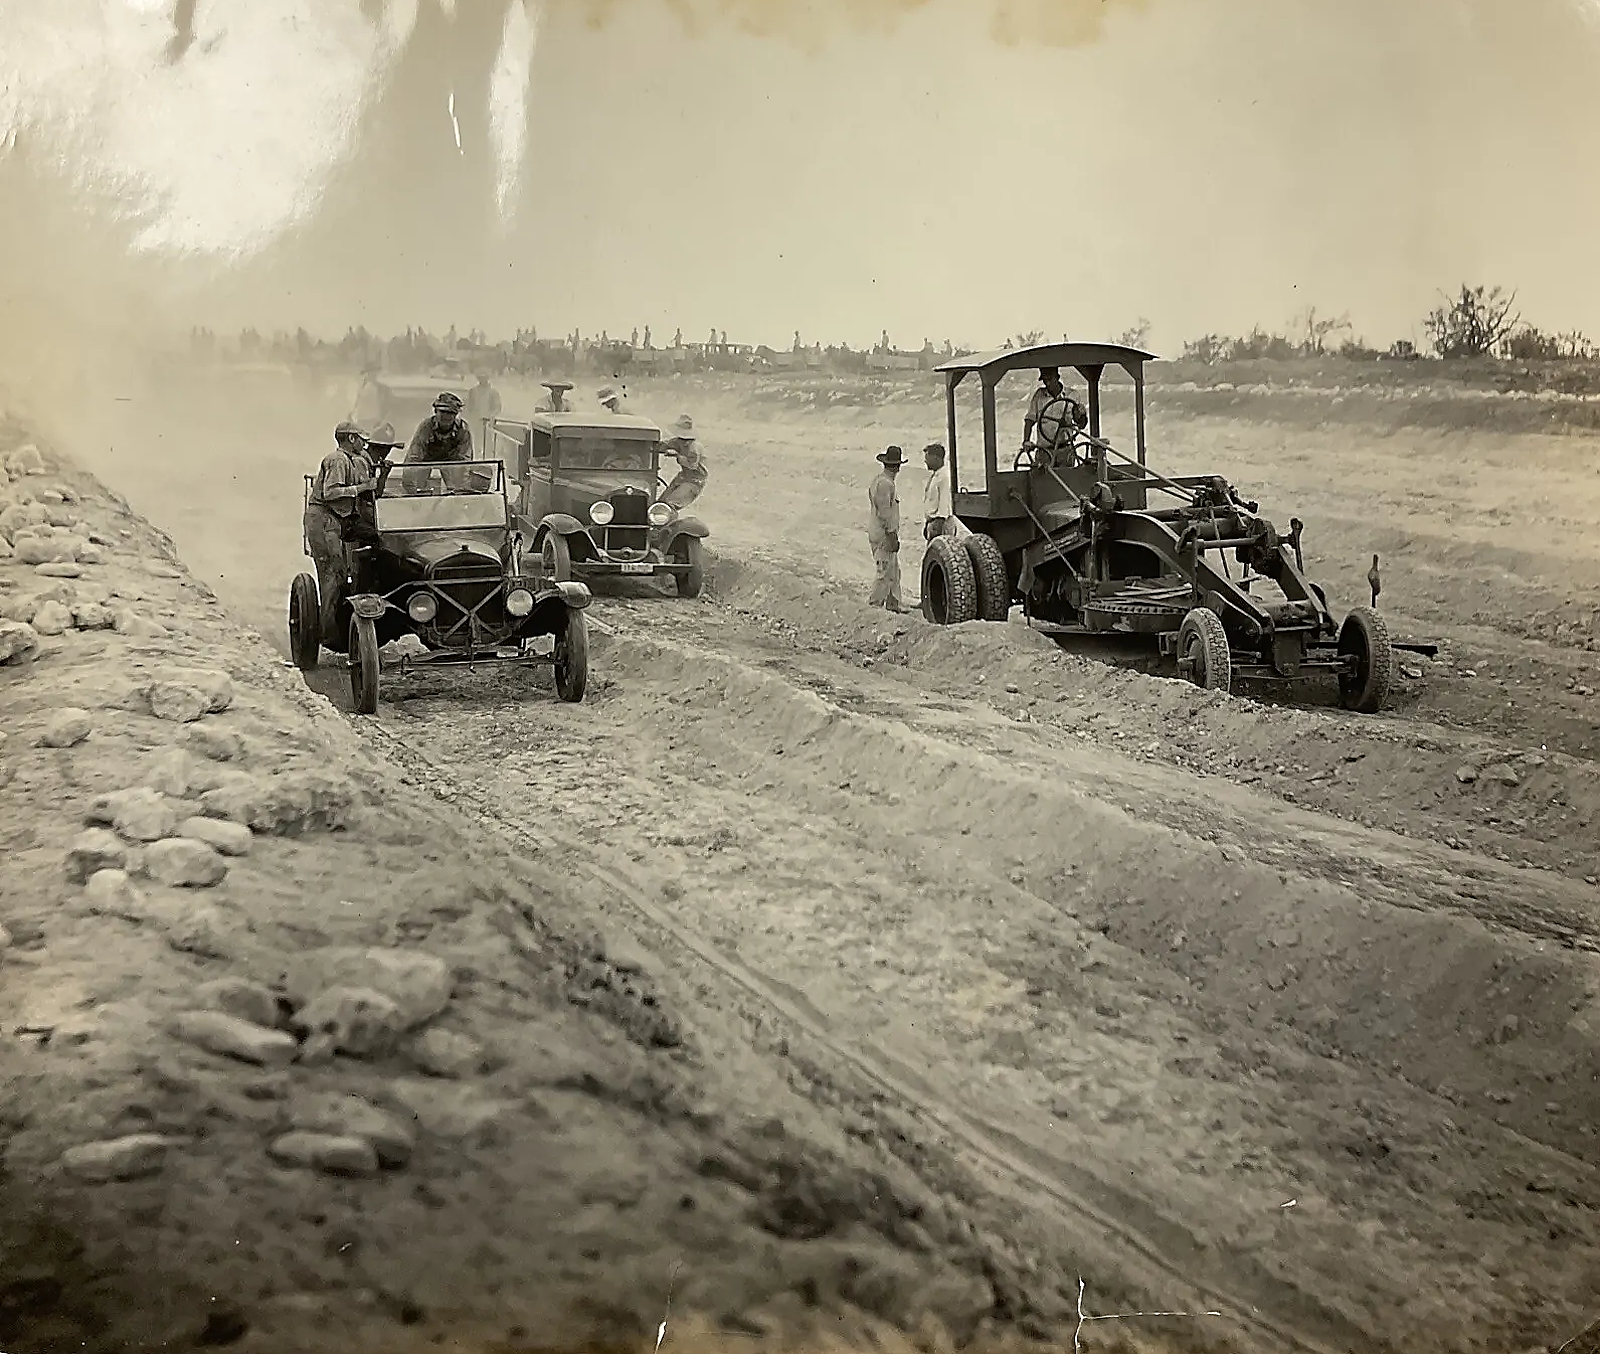 Building Road in Jones County in 1920s